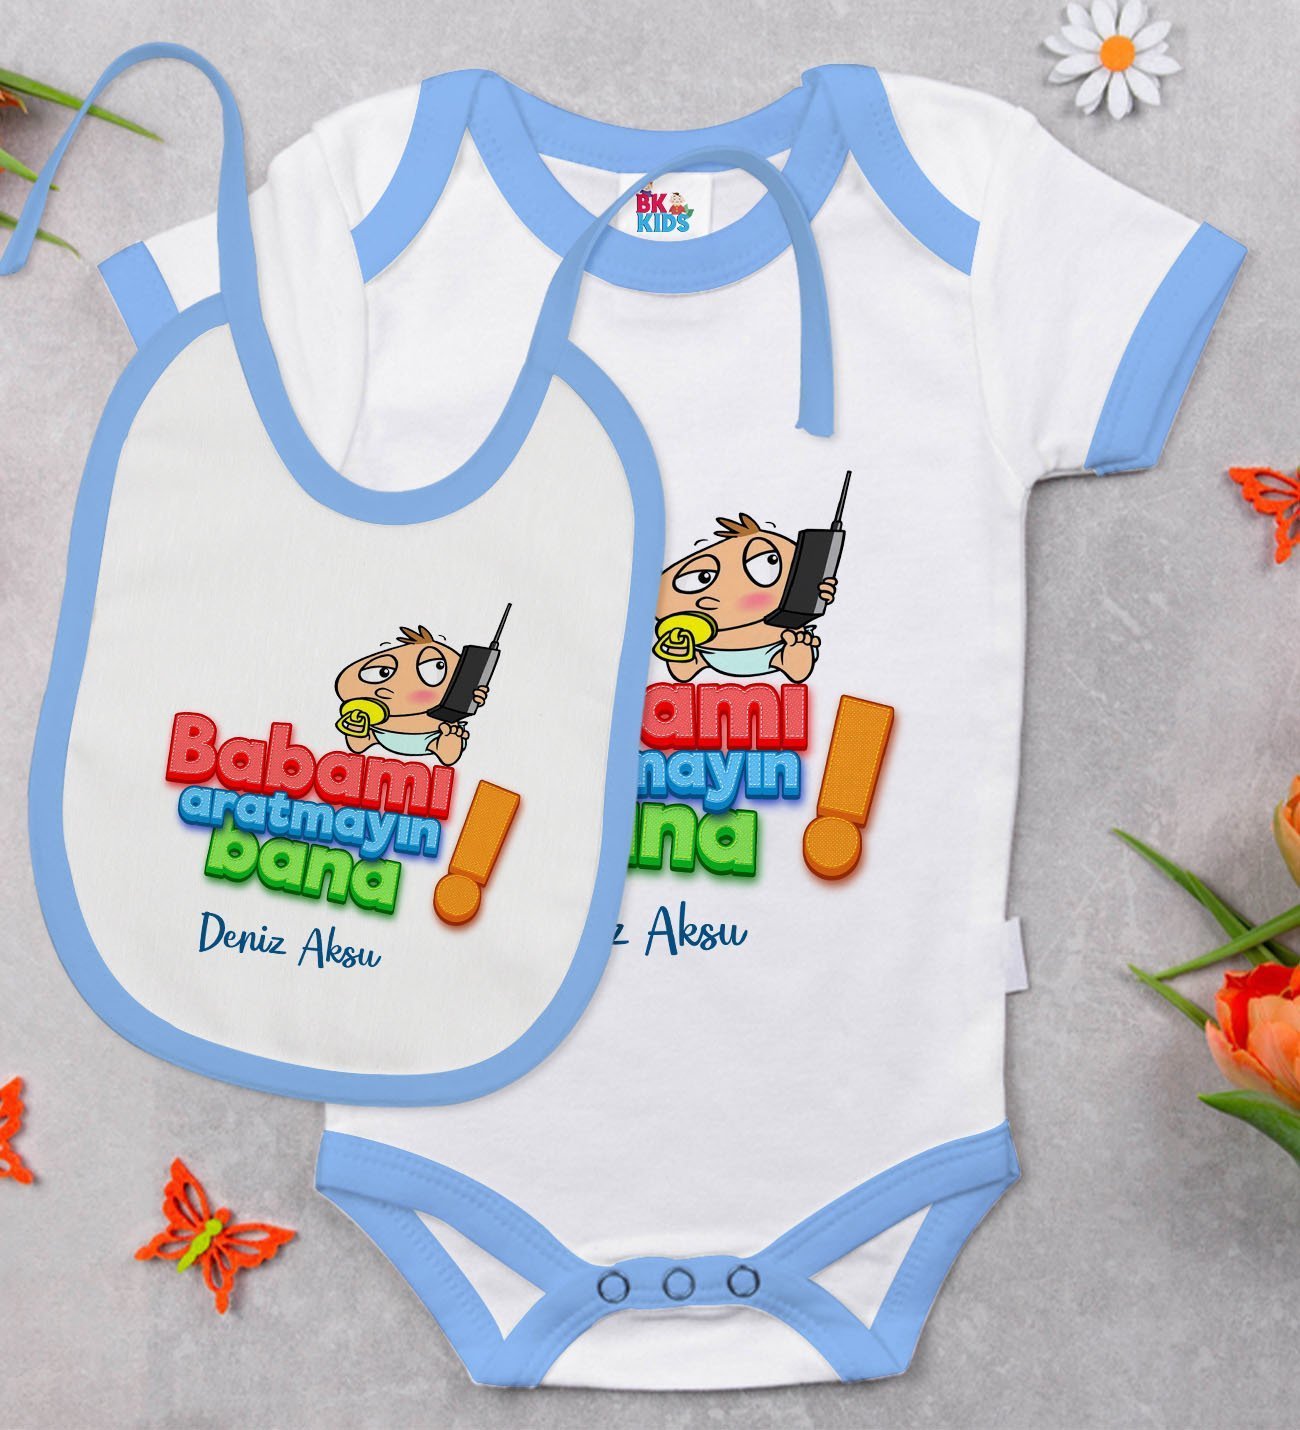 BK Kids Kişiye Özel Babamı Aratmayın Tasarımlı Mavi Bebek Body Zıbın ve Mama Önlüğü Hediye Seti-1